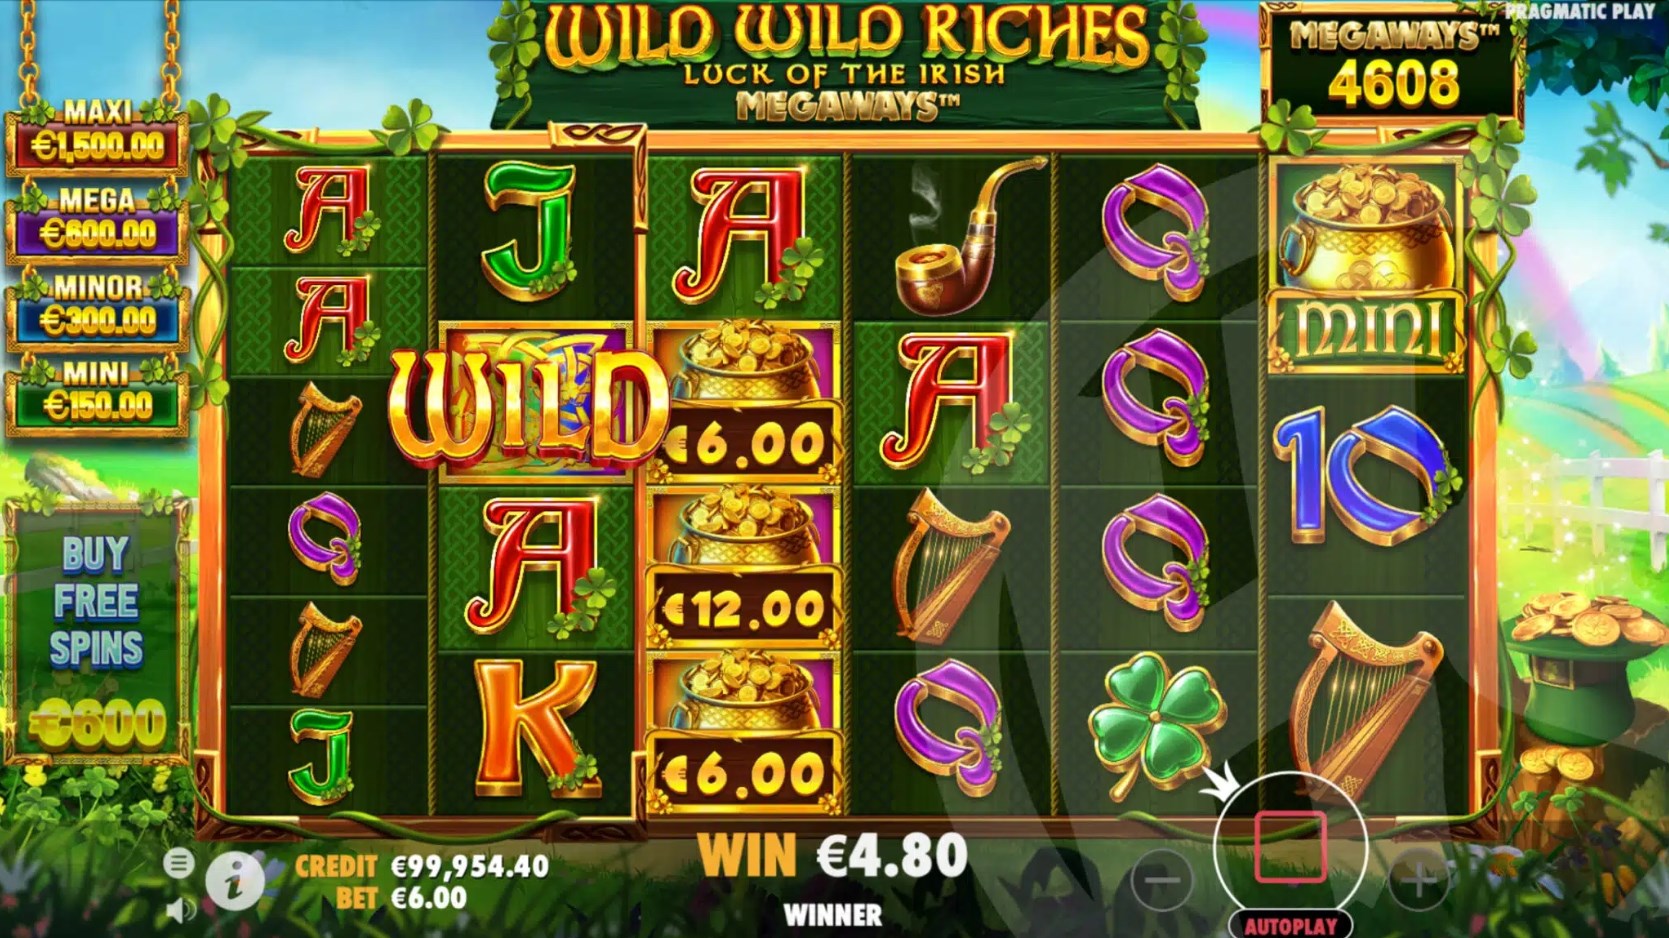 Wild Wild Riches slot game download latest version  1.0.0 screenshot 1